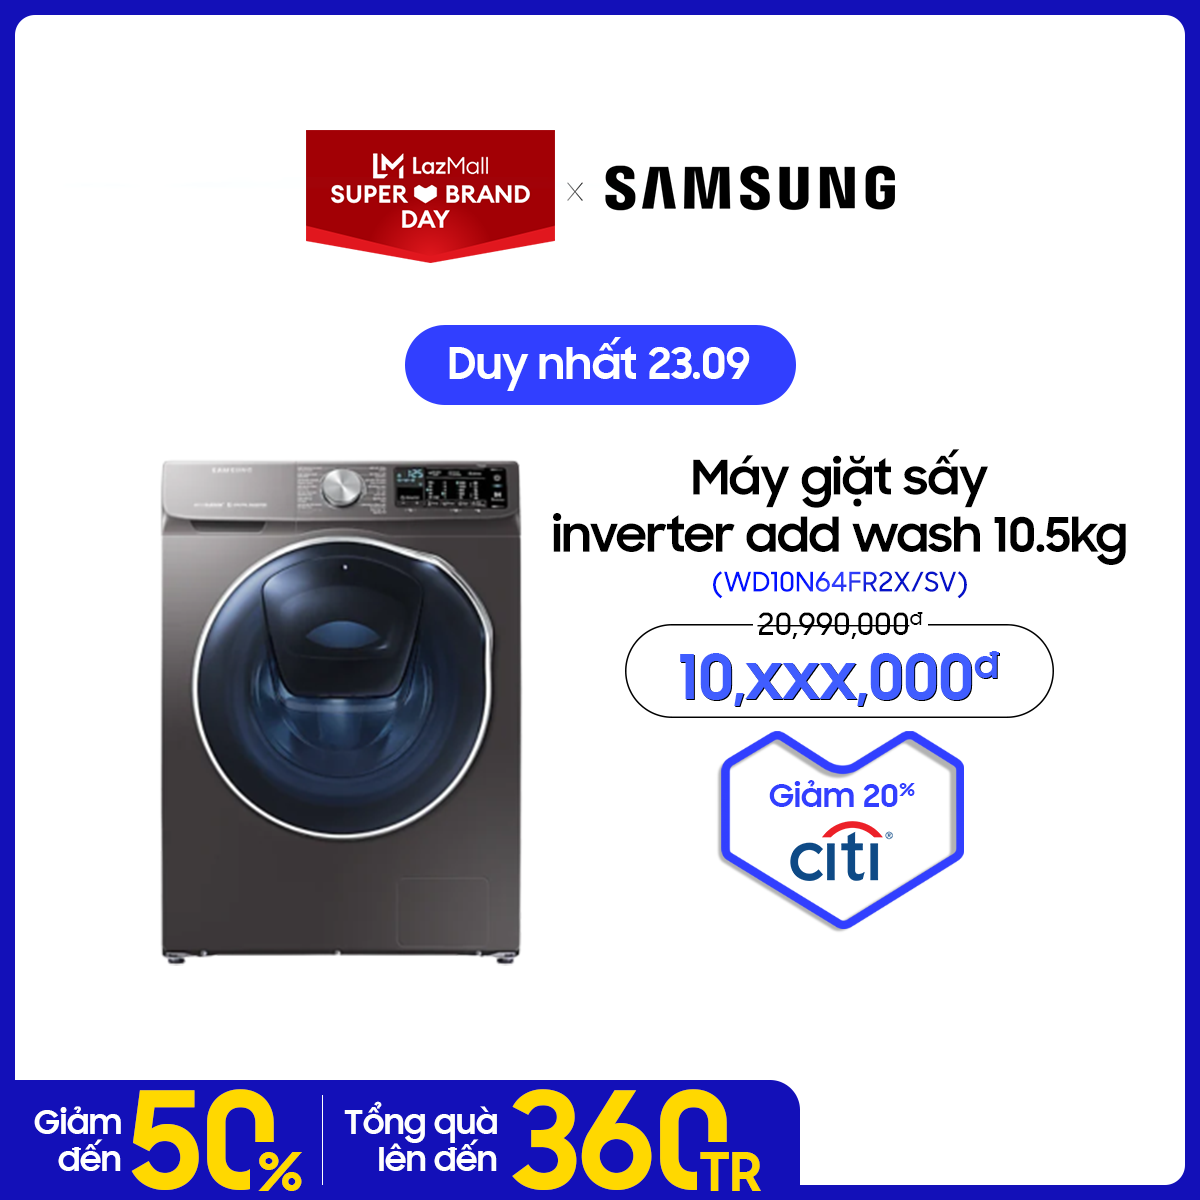 [SIÊU SALE 23.9]Máy giặt sấy inverter add wash Samsung Addwash 10.5kg (WD10N64FR2X/SV) – – Liên Hệ Hotline Samsung 1800588889 để được hỗ trợ lắp đặt – Hàng chính hãng